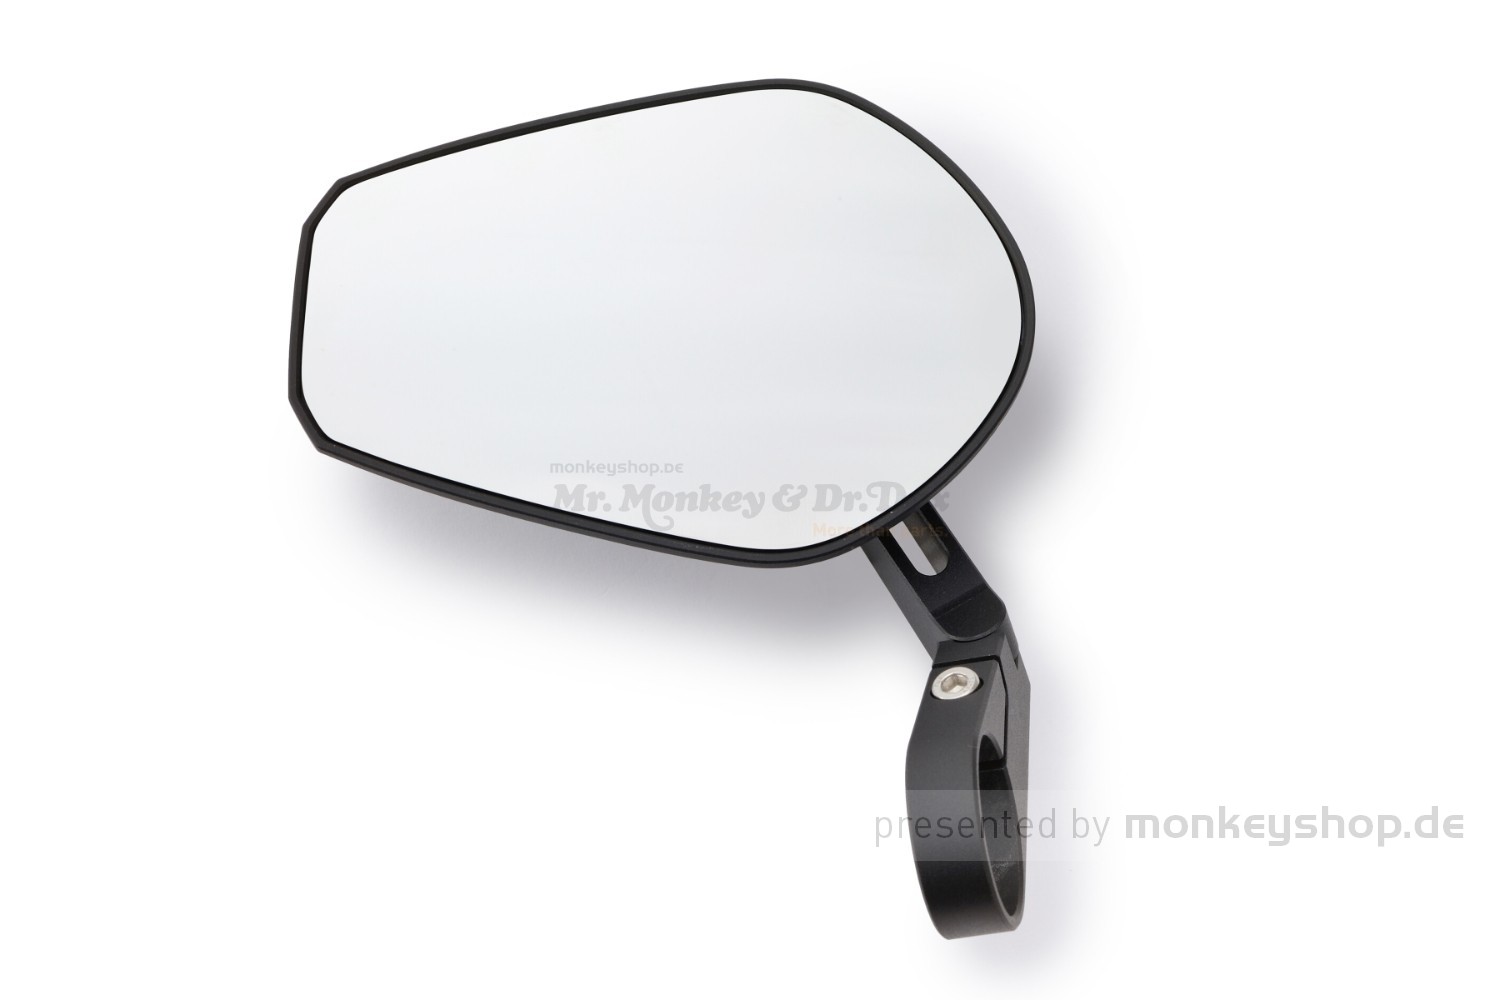 Alu Lenkerendenspiegel D-MIRROR-5 PAN 118 x 86 mm E-geprüft 1 Stück -,  68,88 €